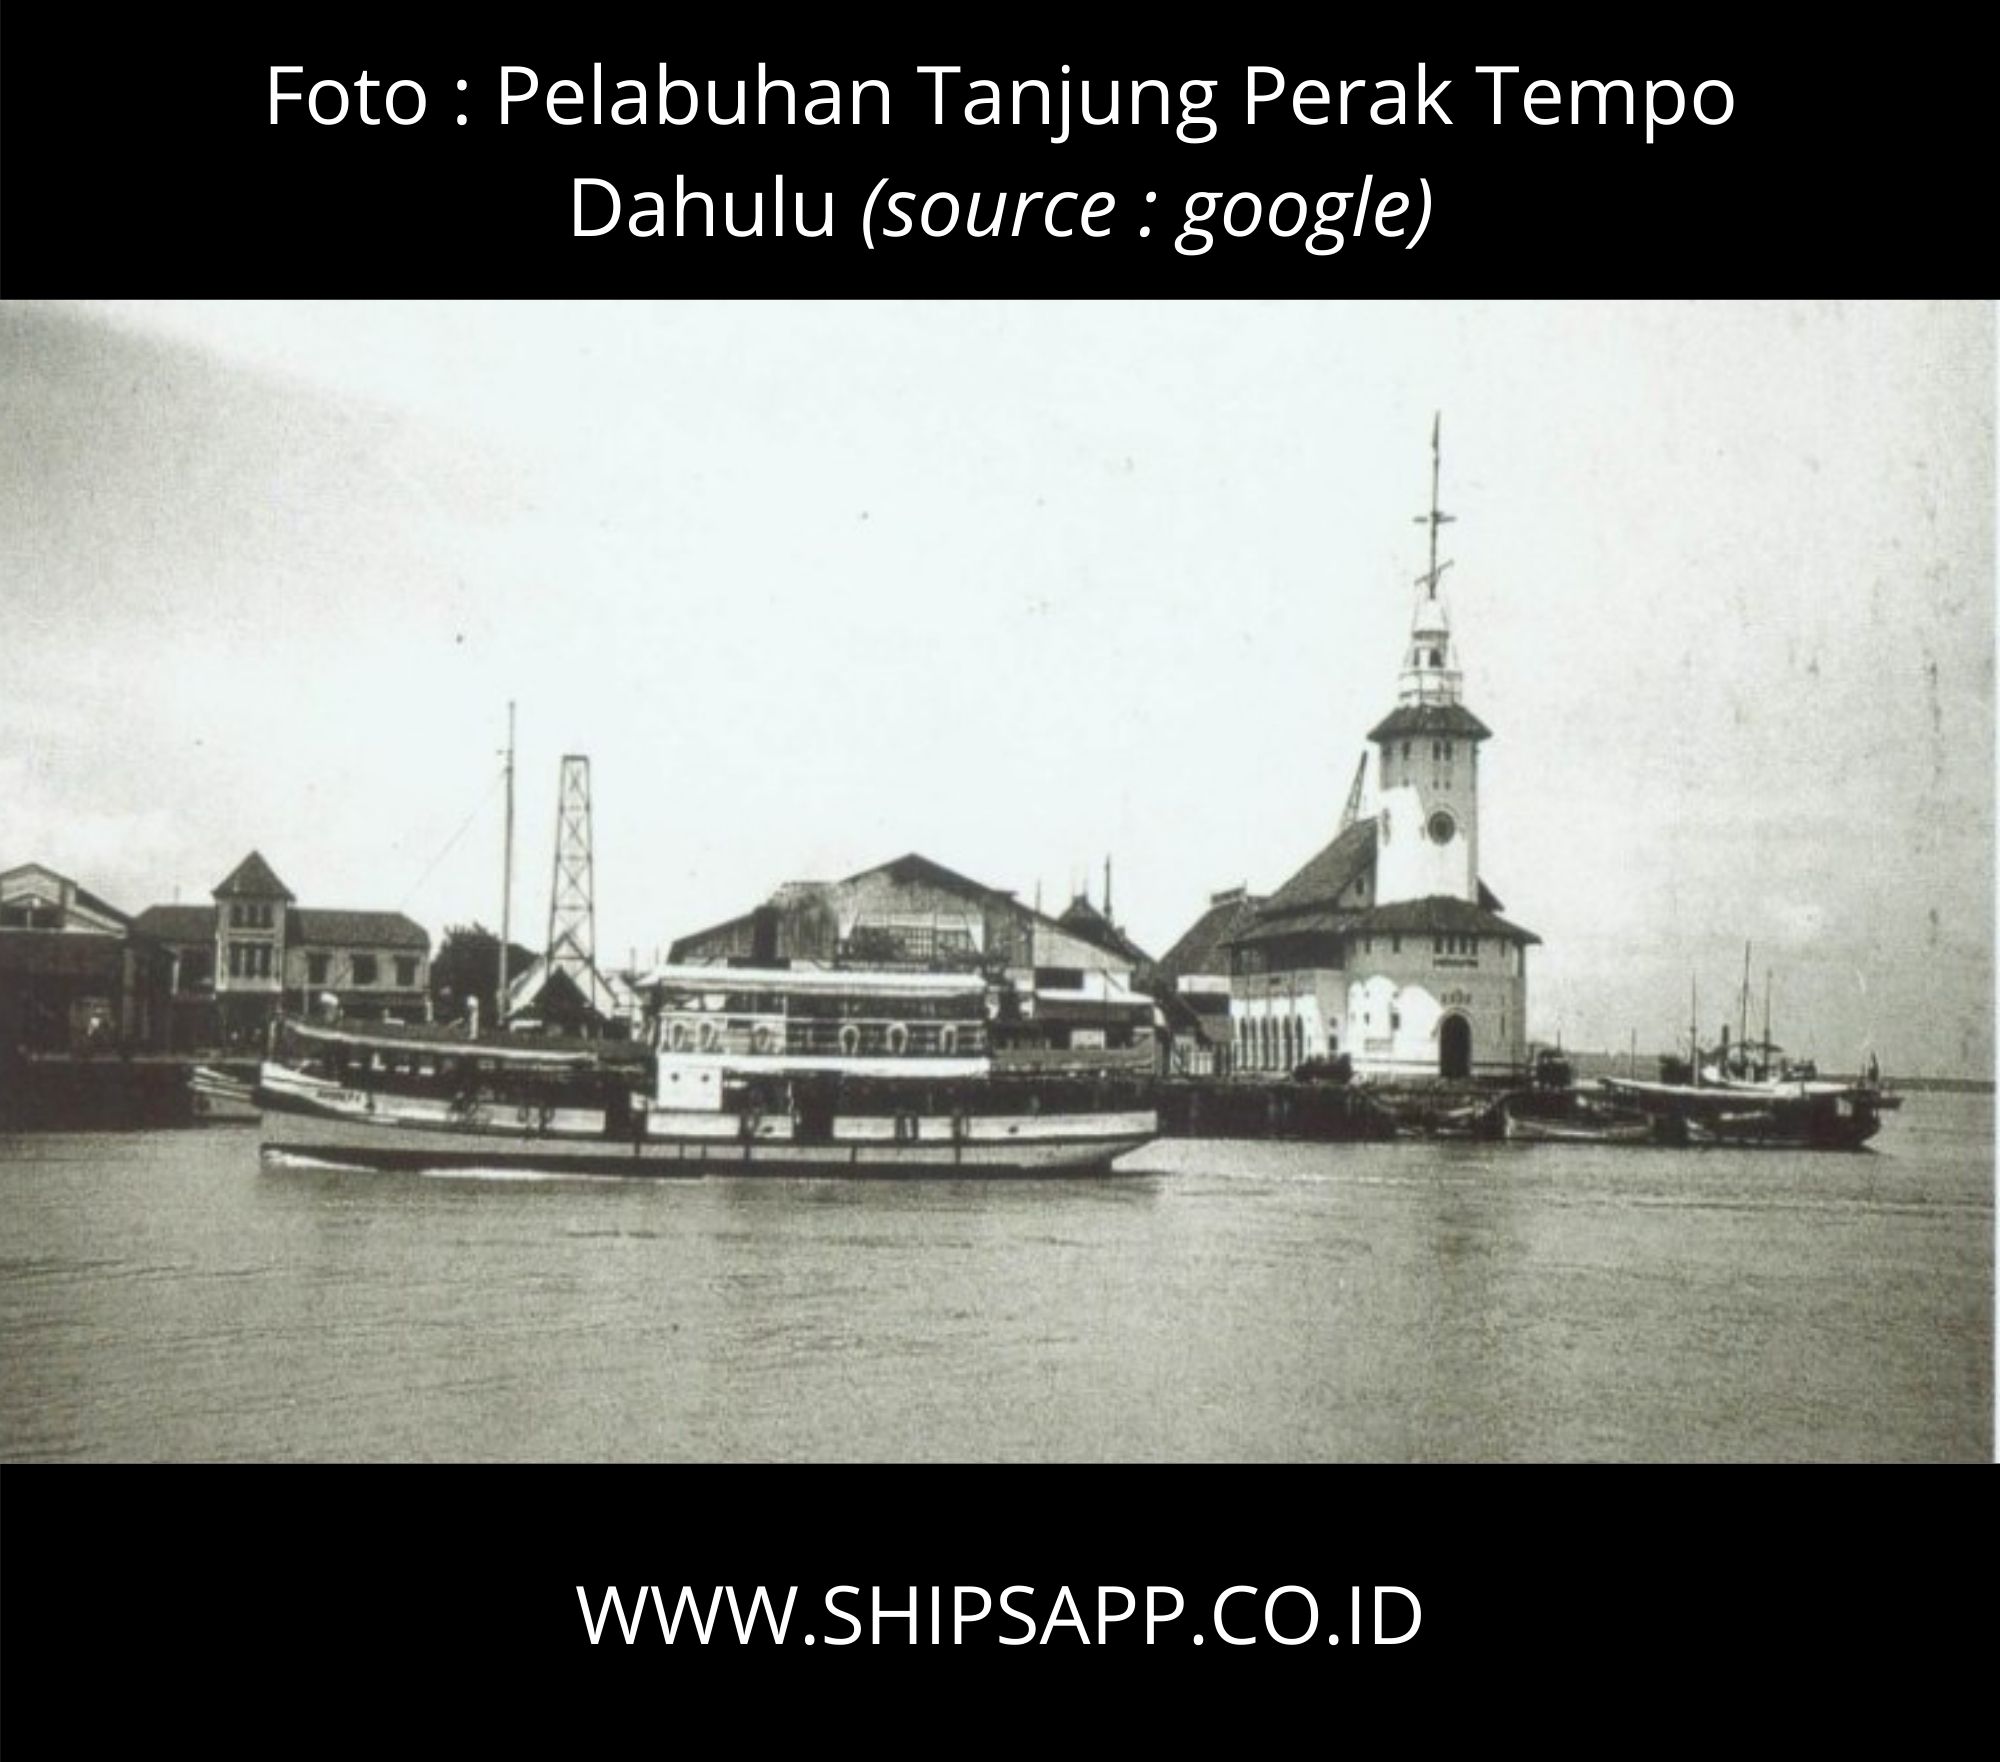 Sejarah Pelabuhan Tanjung Perak